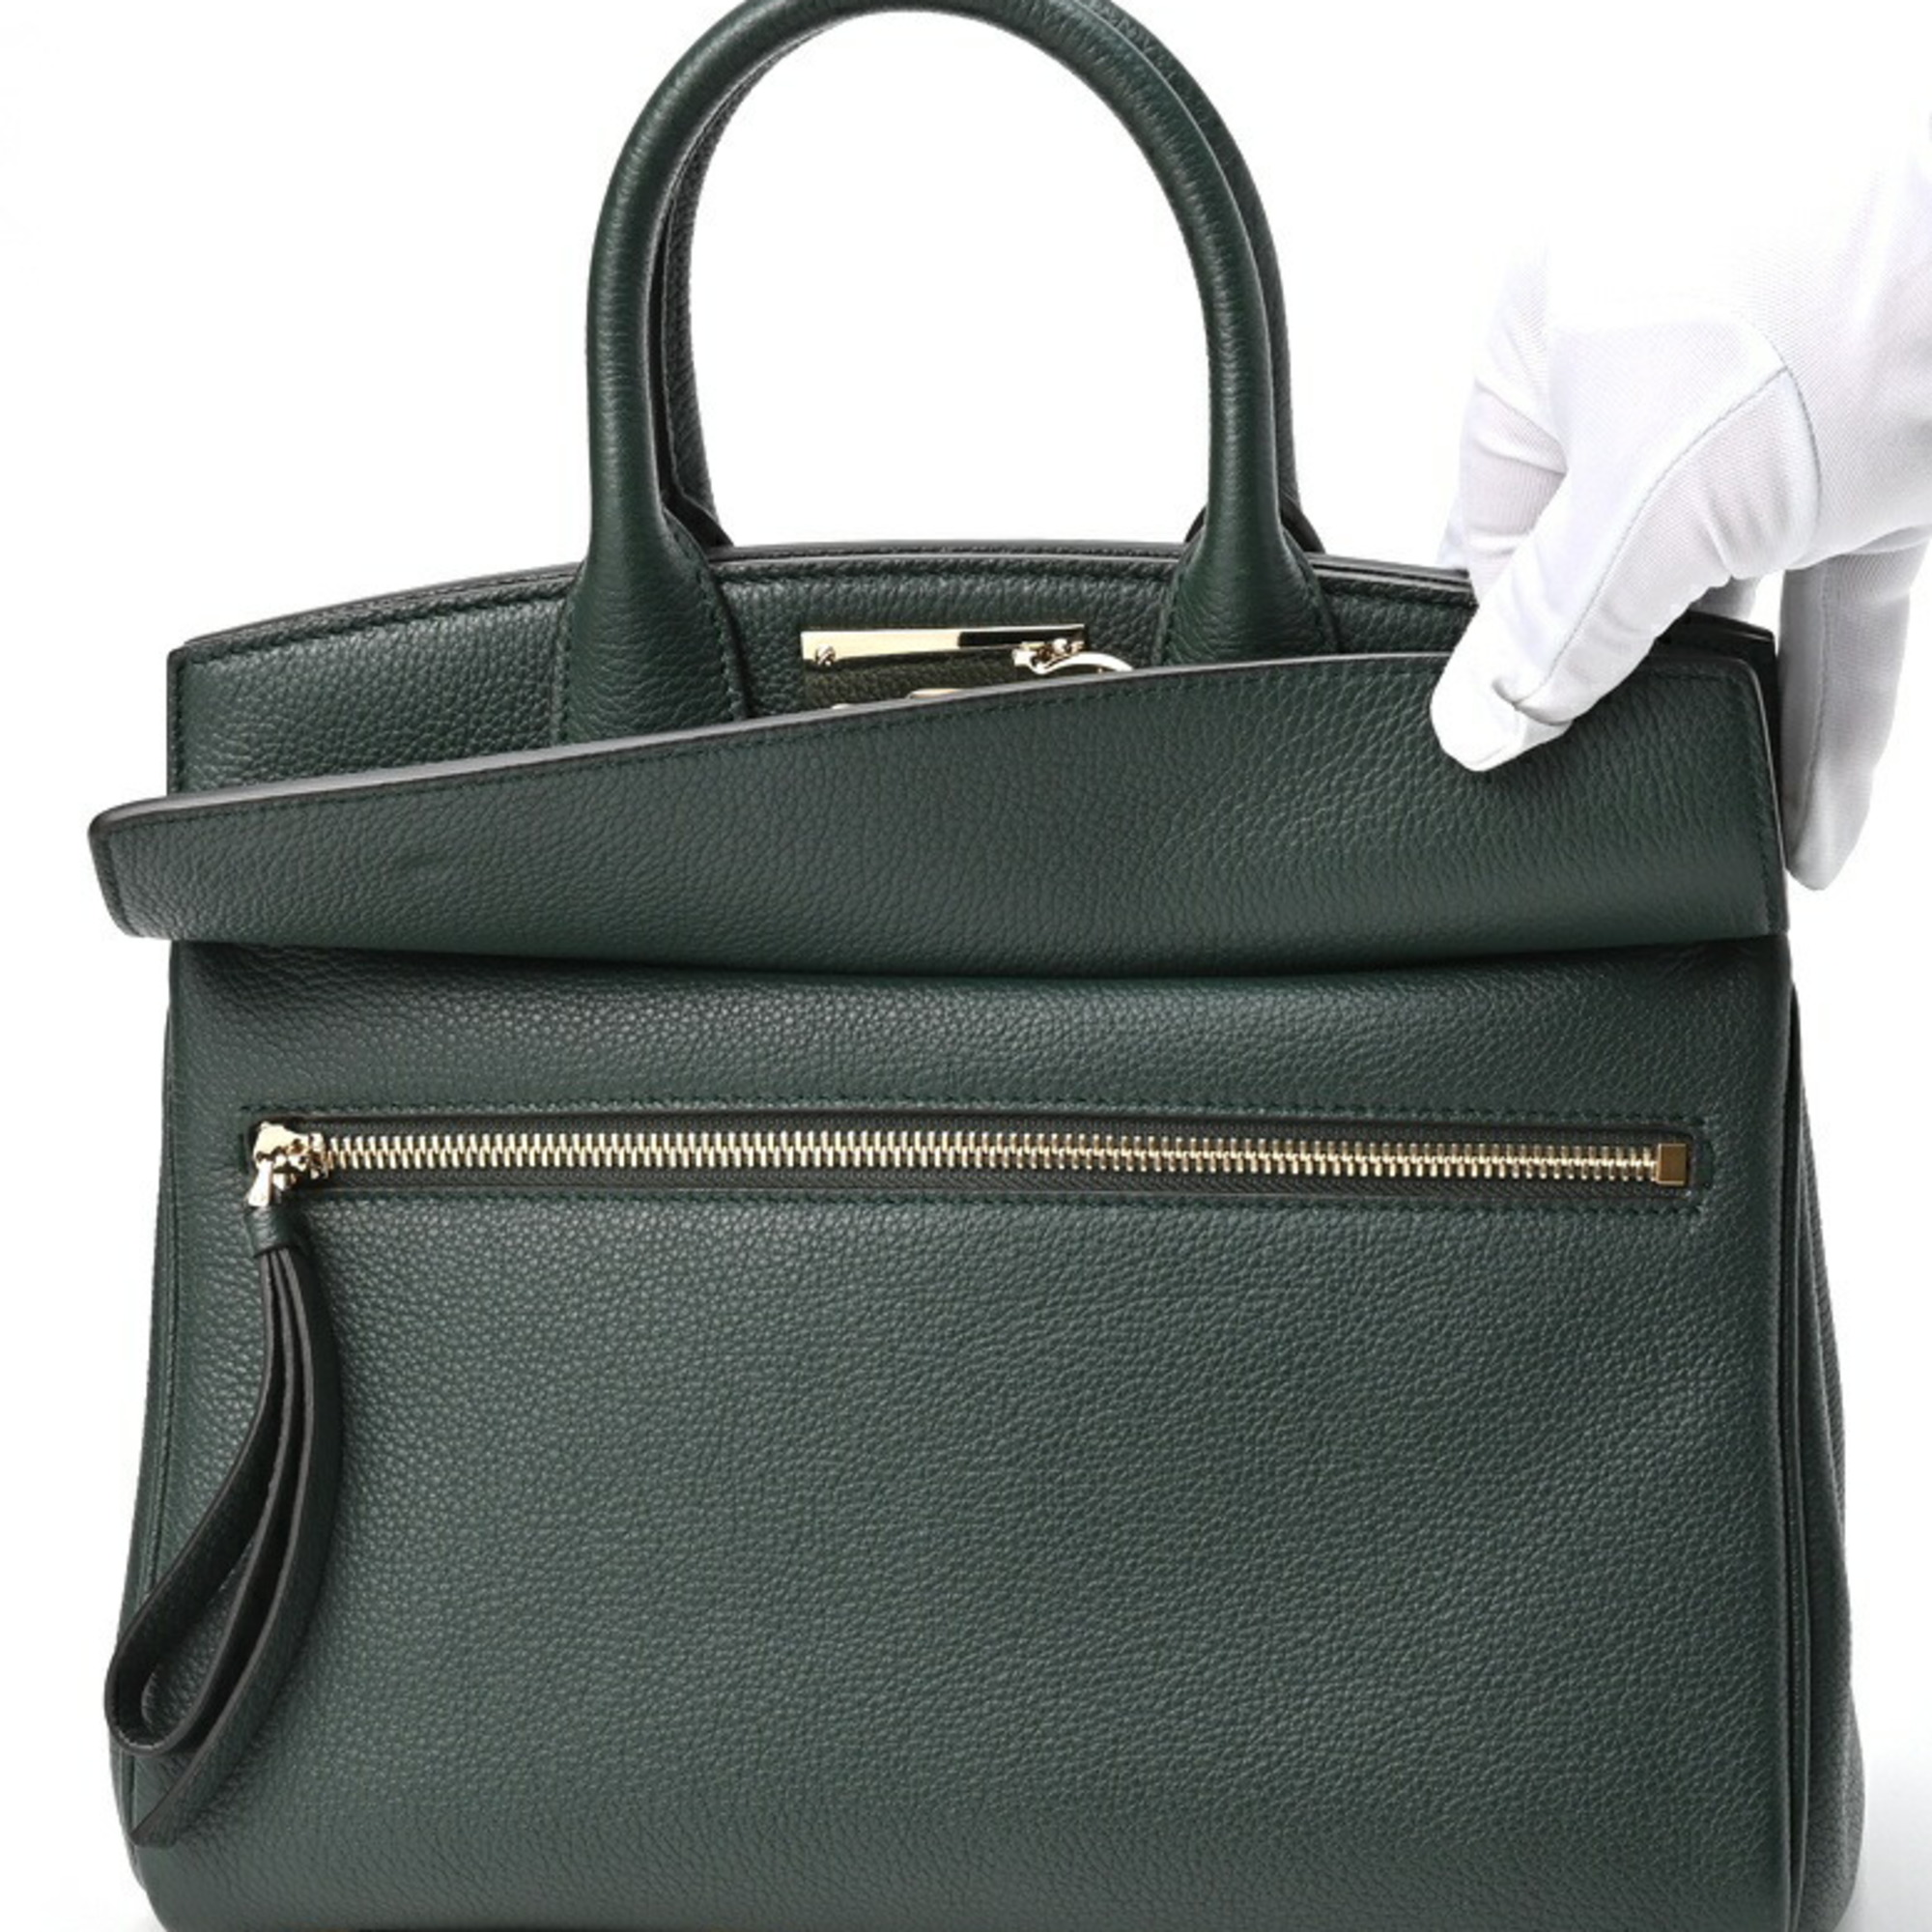 Salvatore Ferragamo FERRAGAMO Studio Bag Small 21H159 Embossed Leather Green S-155366